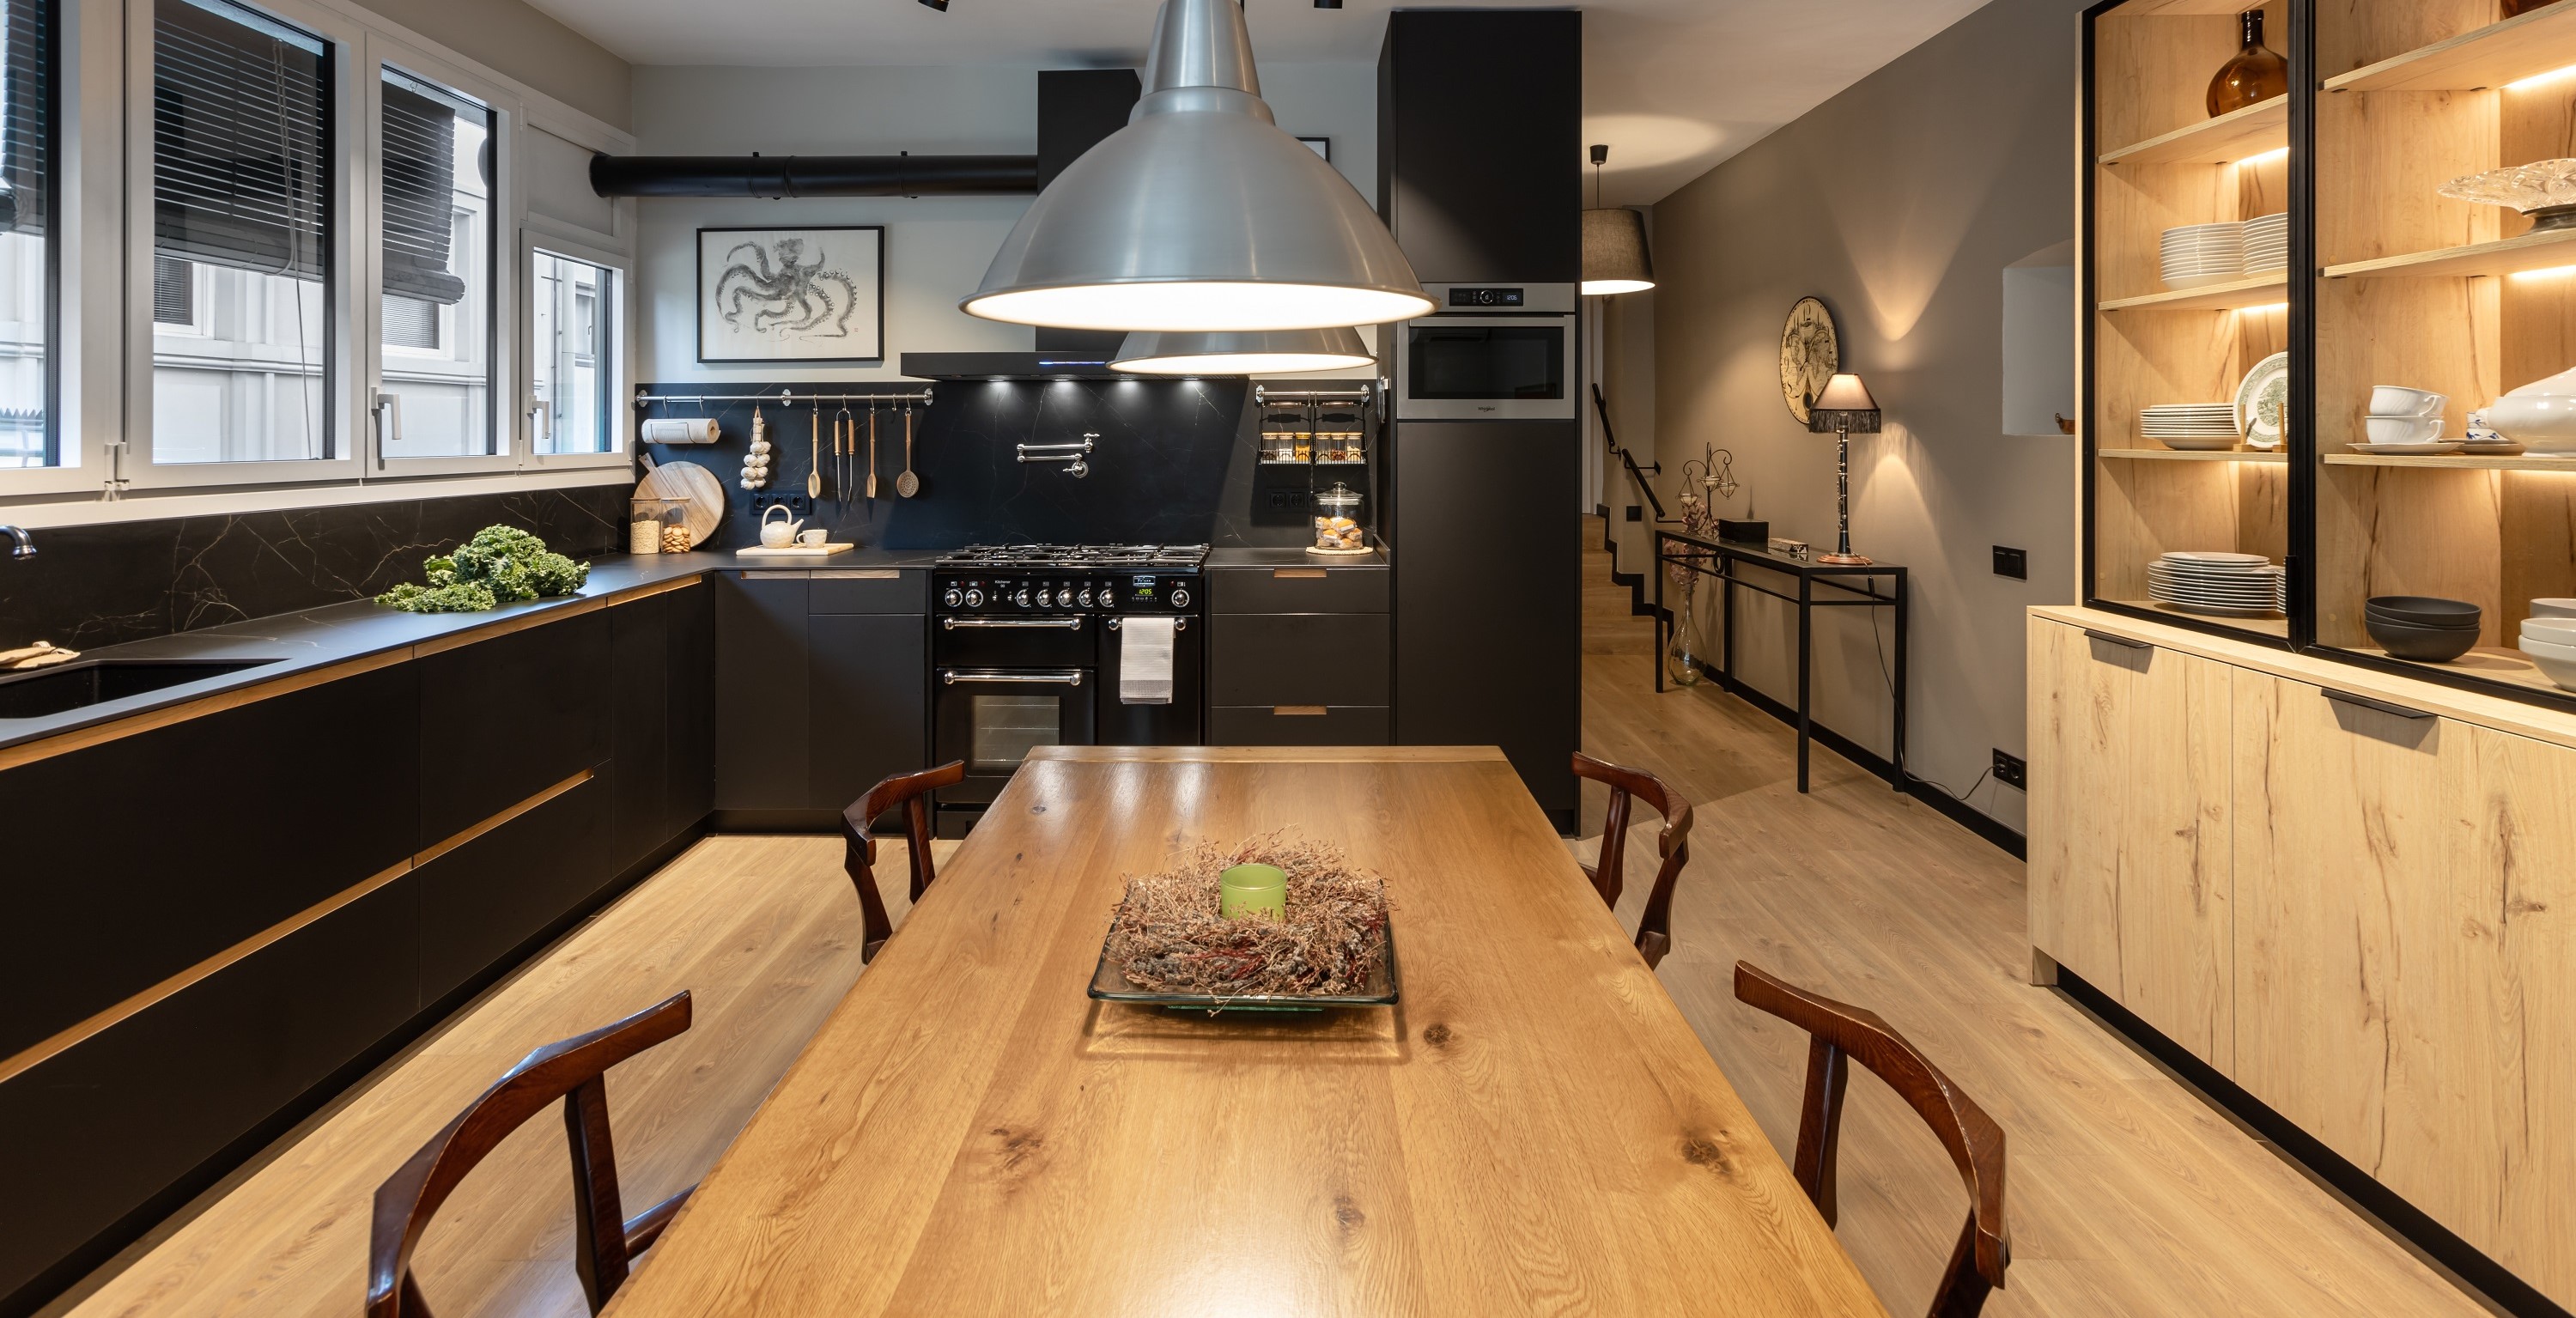 Una cocina integrada con las áreas sociales de la vivienda que combina lujo y calidez